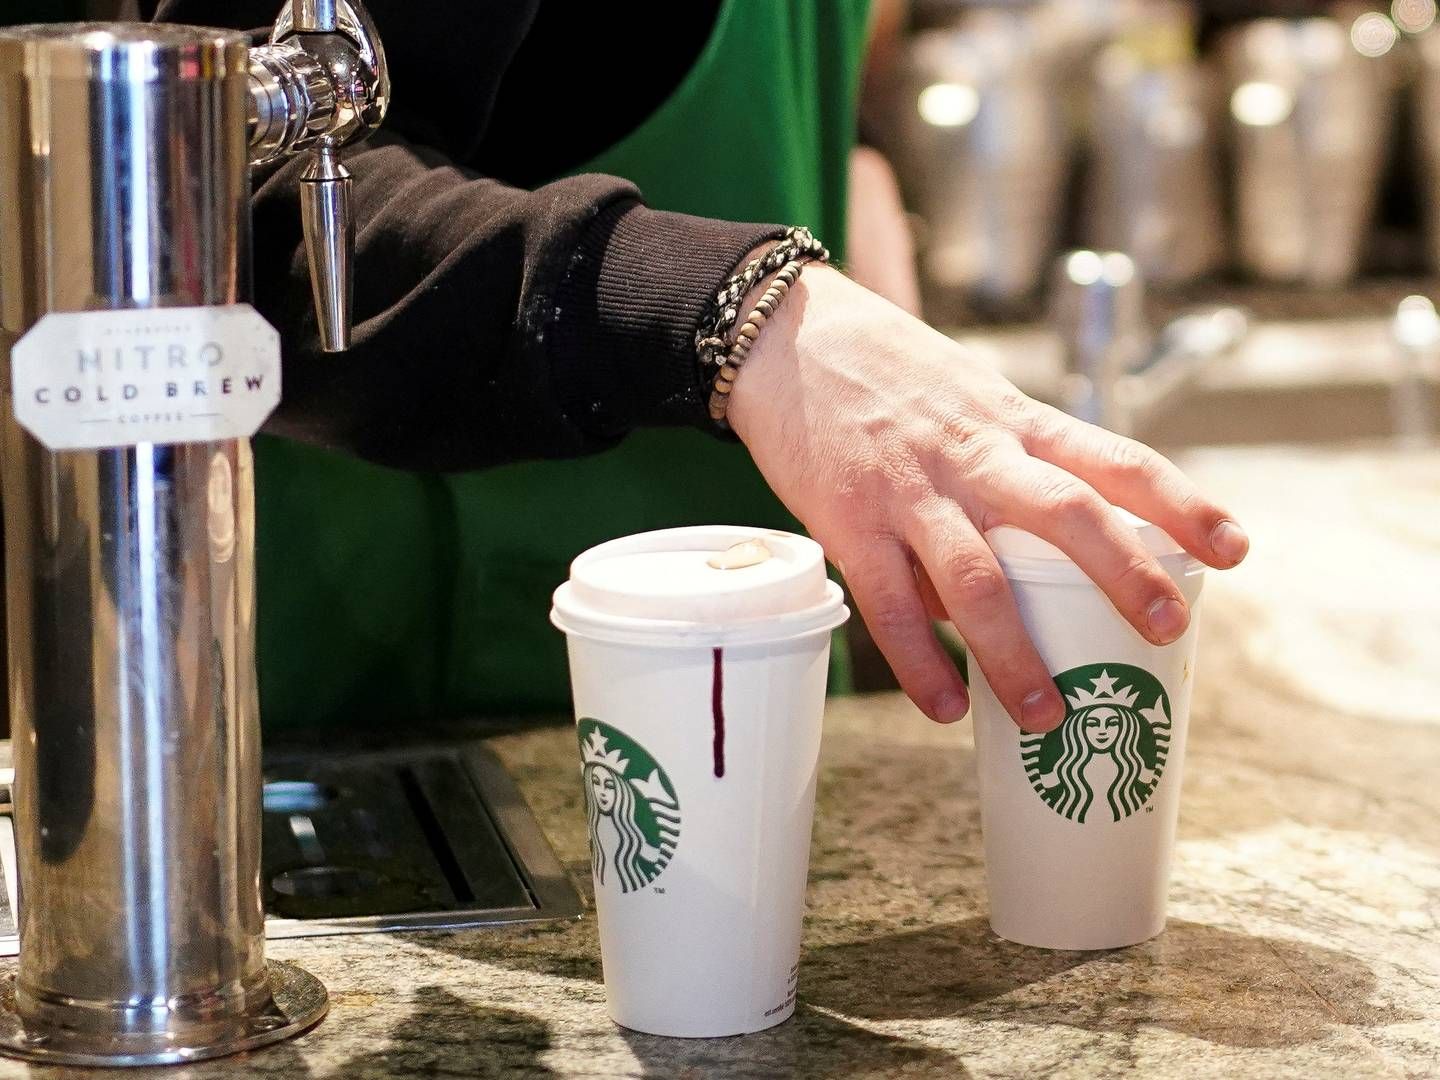 Den globale kaffekæde Starbucks har hævet priserne på deres produkter grundet høje renter og øgede omkostninger, hvilket har fået forbrugeren til at fravælge kaffekæden i stigende grad. | Photo: Henry Nicholls/Ritzau Scanpix.